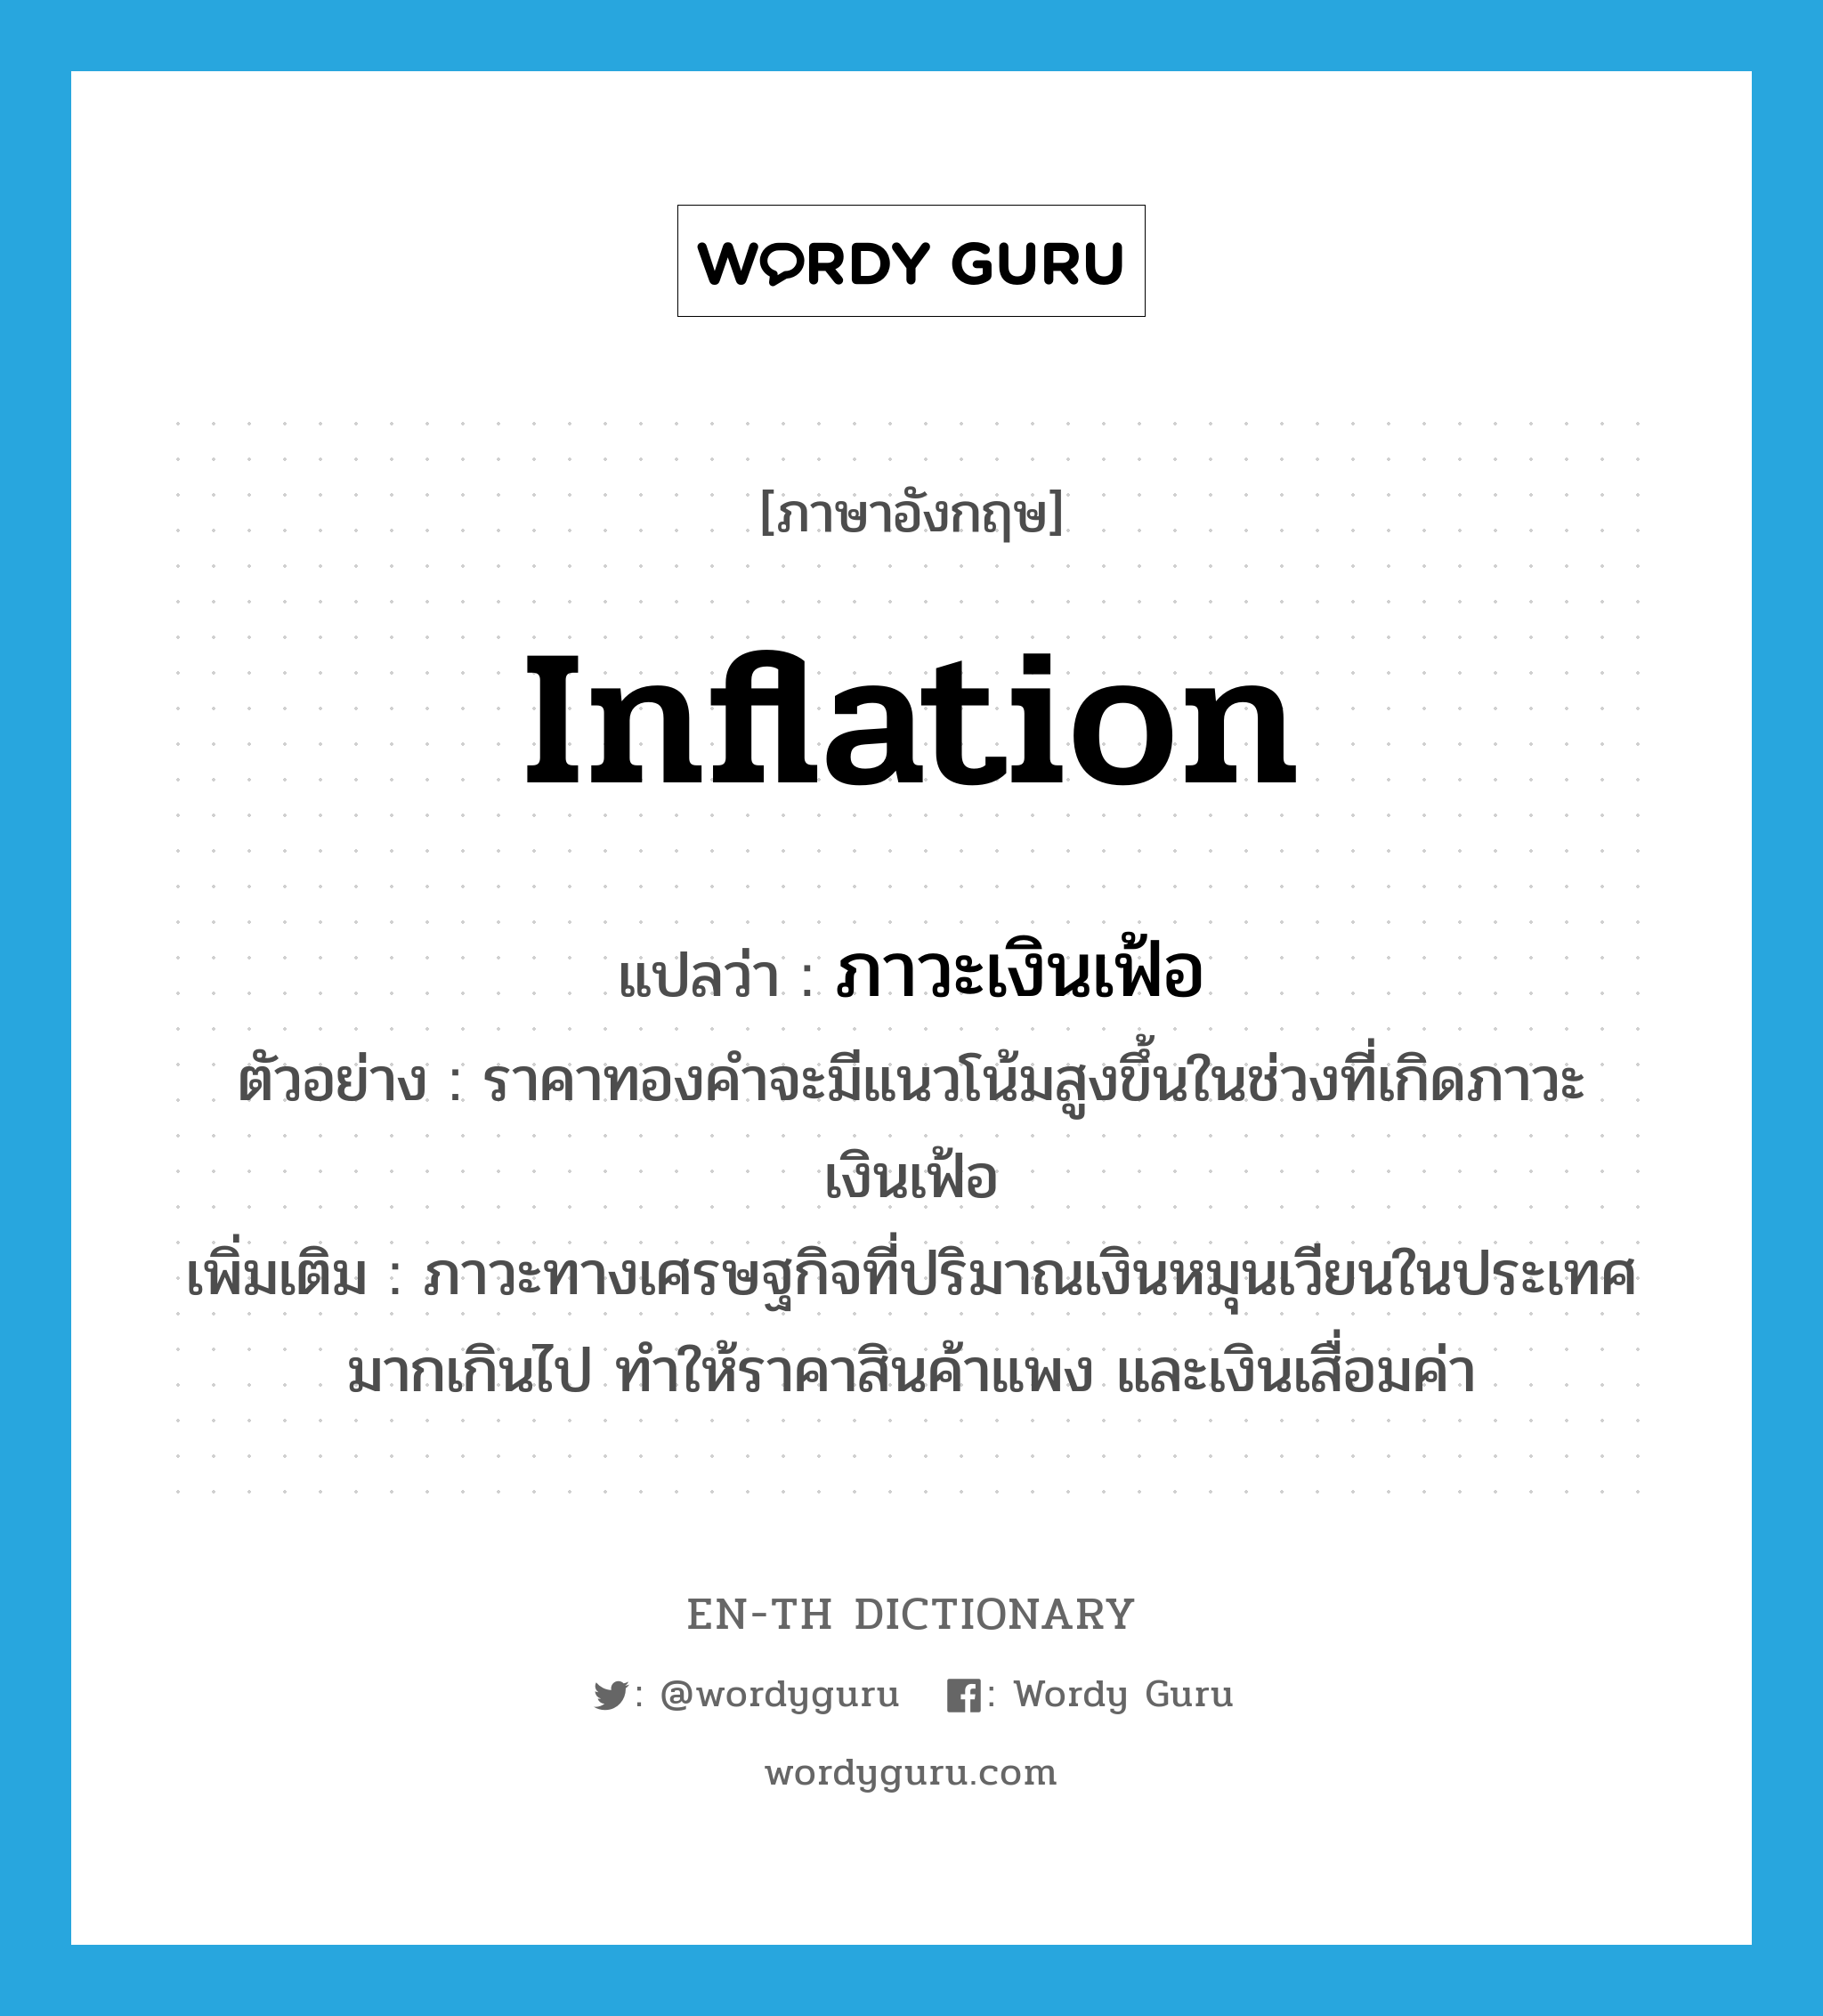 inflation แปลว่า?, คำศัพท์ภาษาอังกฤษ inflation แปลว่า ภาวะเงินเฟ้อ ประเภท N ตัวอย่าง ราคาทองคำจะมีแนวโน้มสูงขึ้นในช่วงที่เกิดภาวะเงินเฟ้อ เพิ่มเติม ภาวะทางเศรษฐกิจที่ปริมาณเงินหมุนเวียนในประเทศมากเกินไป ทำให้ราคาสินค้าแพง และเงินเสื่อมค่า หมวด N